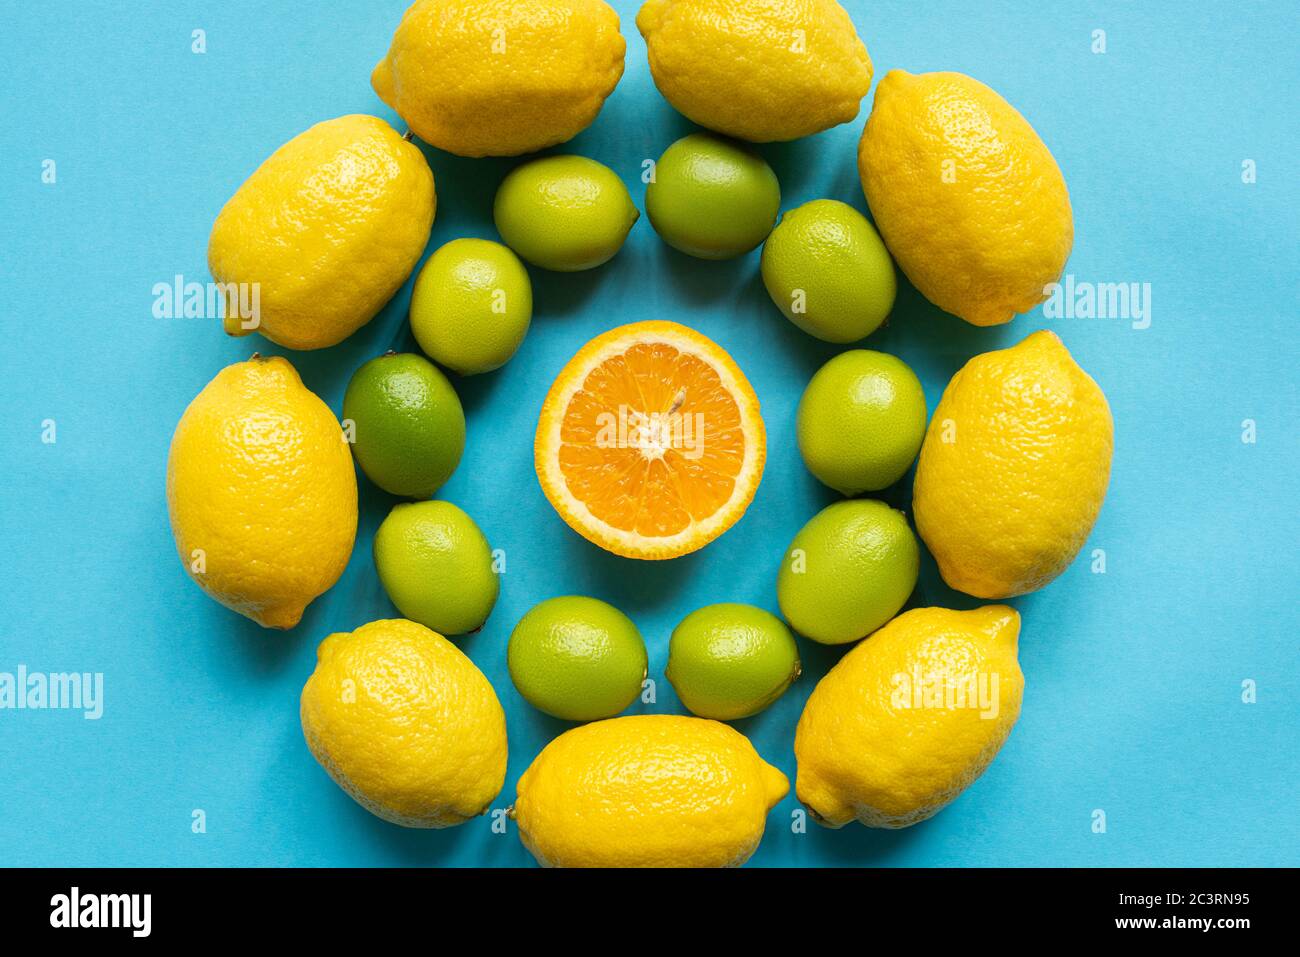 vista superior de limones amarillos maduros, naranja y limas dispuestas en círculos sobre fondo azul Foto de stock